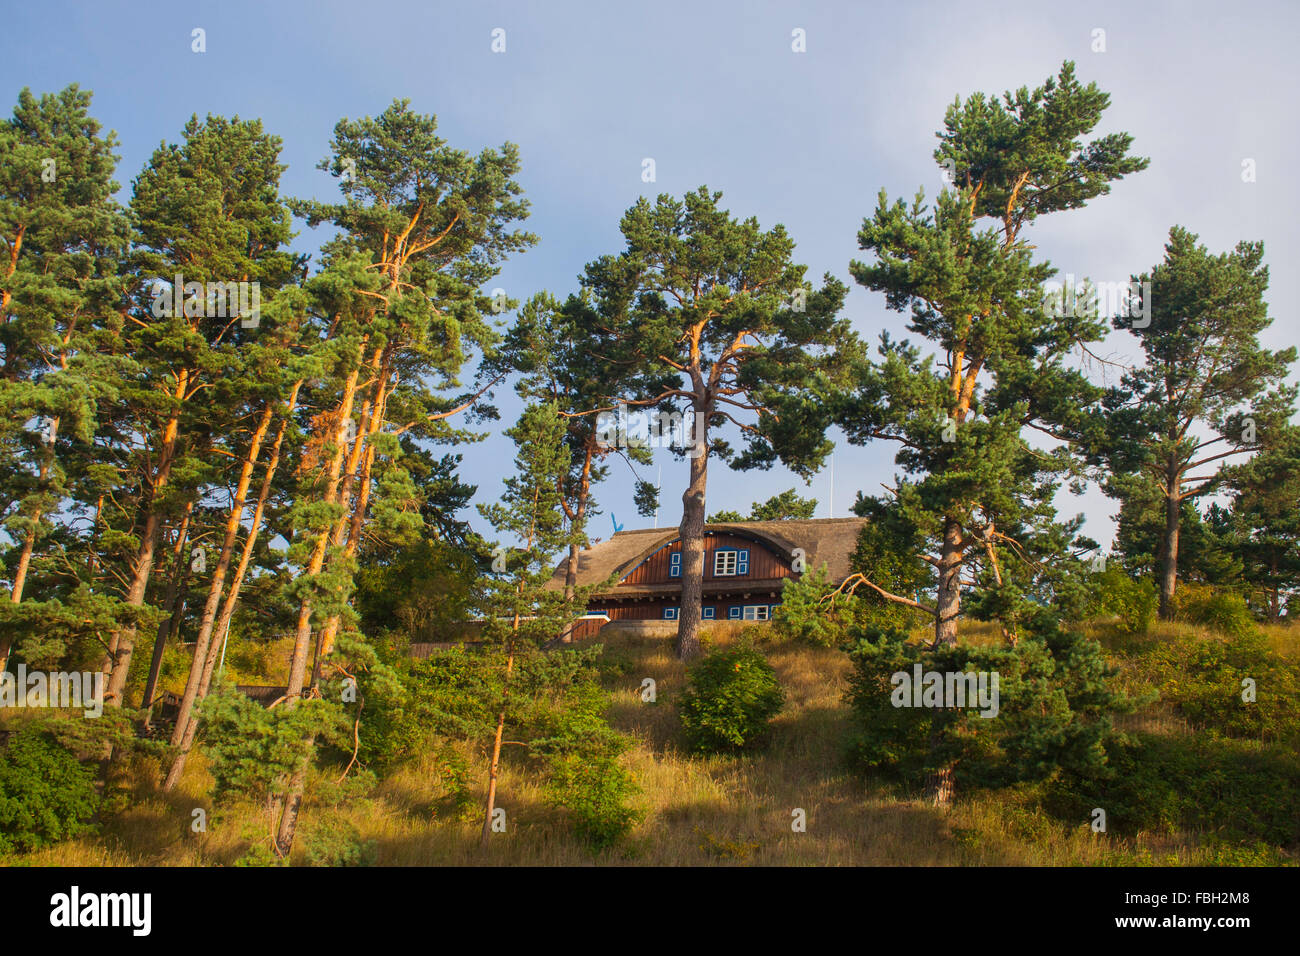 View up to the Thomas Mann House, Nida, Lithuania Stock Photo